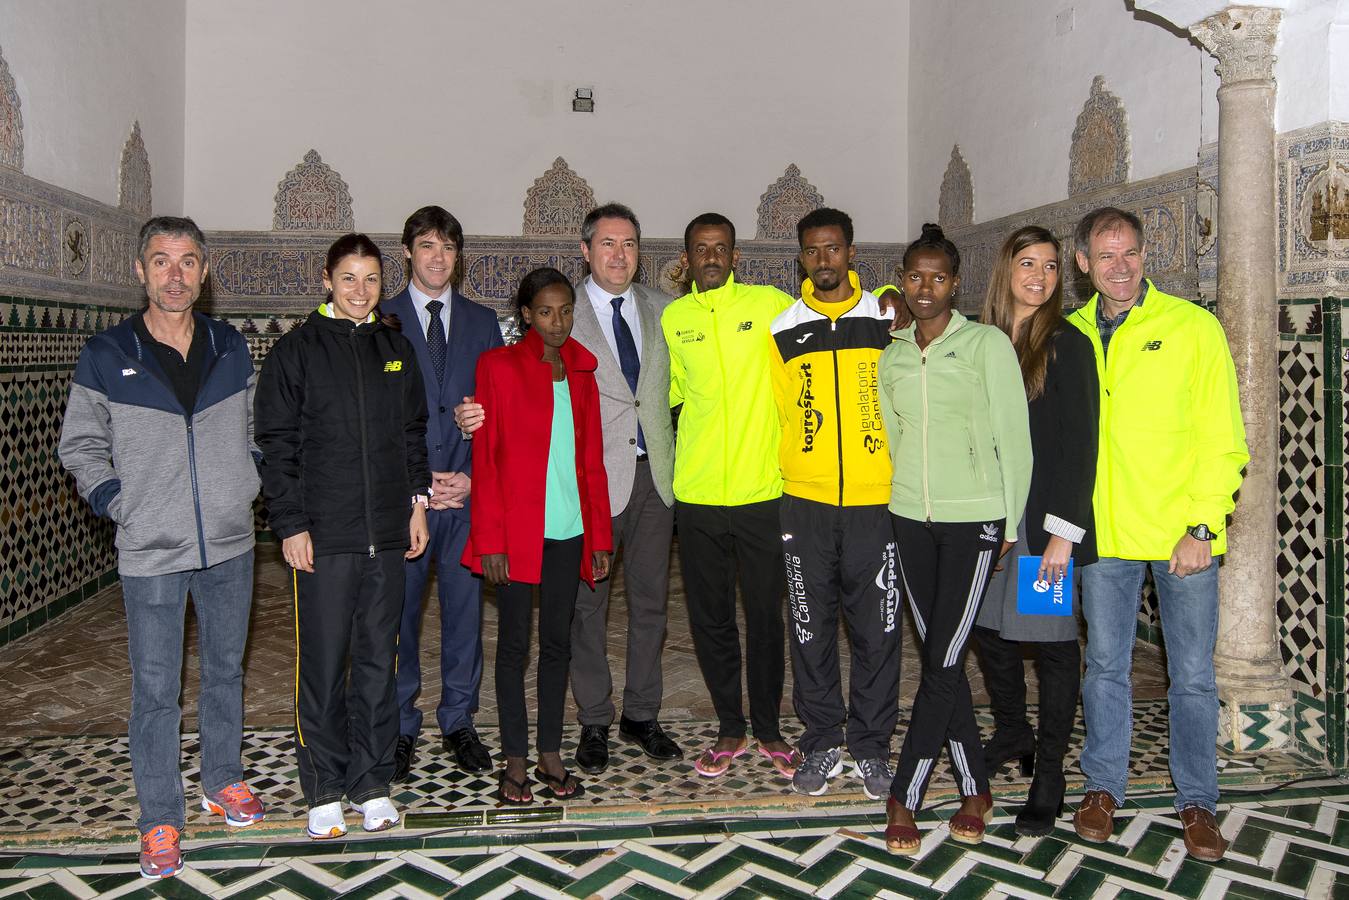 La presentación del Zurich Maratón de Sevilla, en imágenes